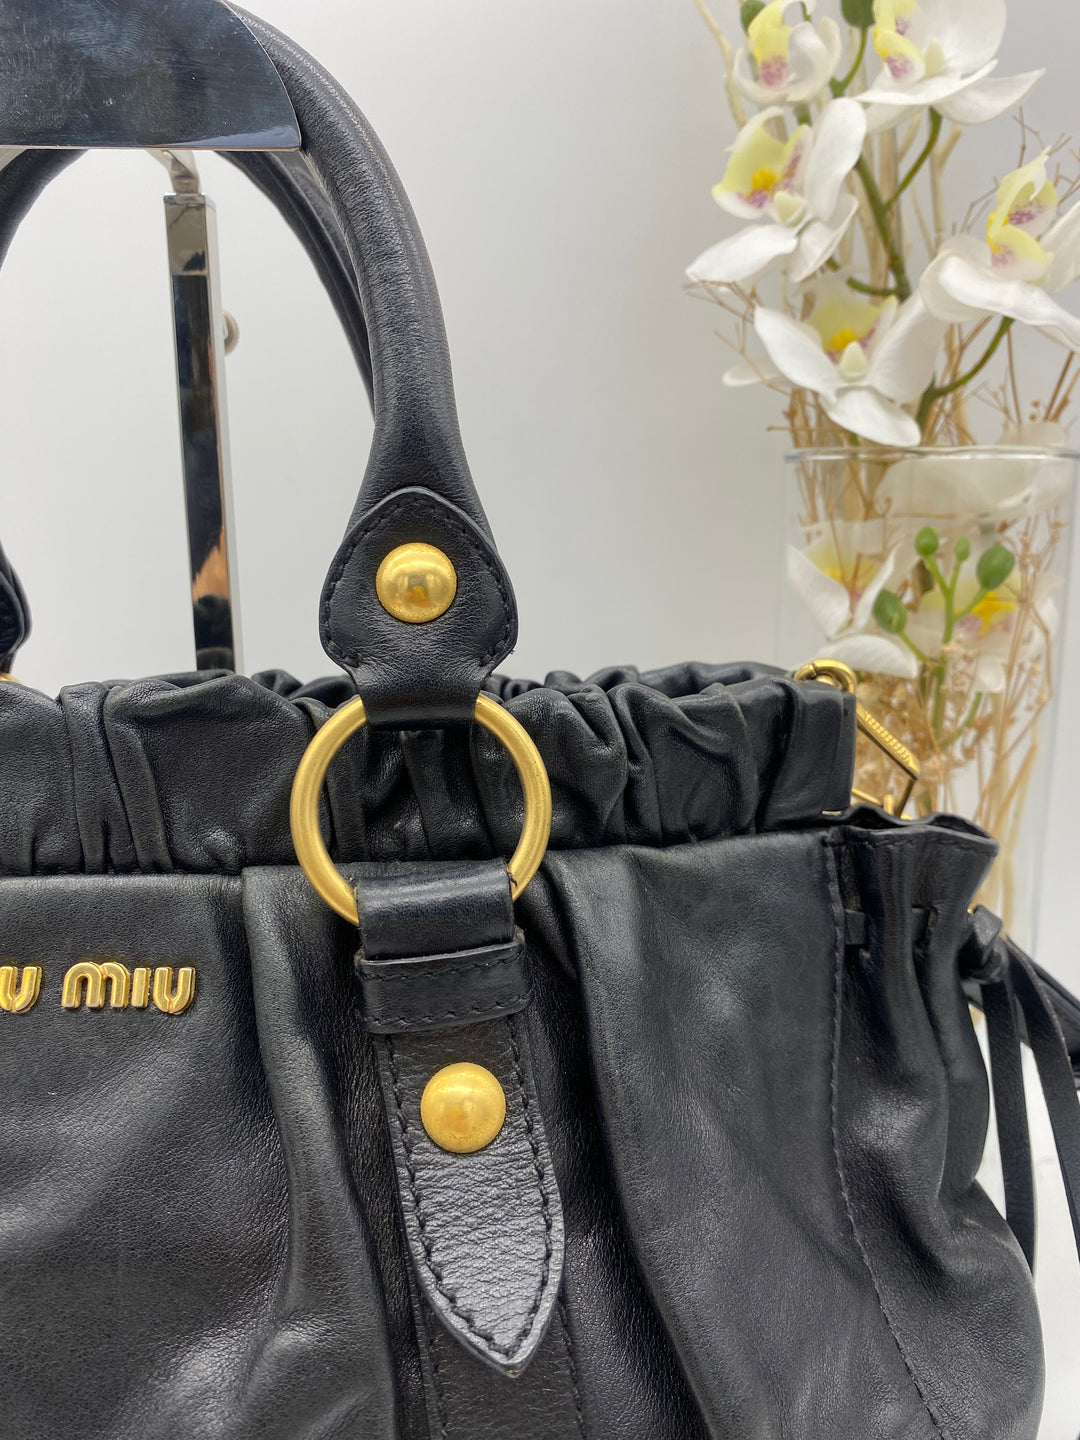 MIUMIU 2 WAY SHOULDER BAG